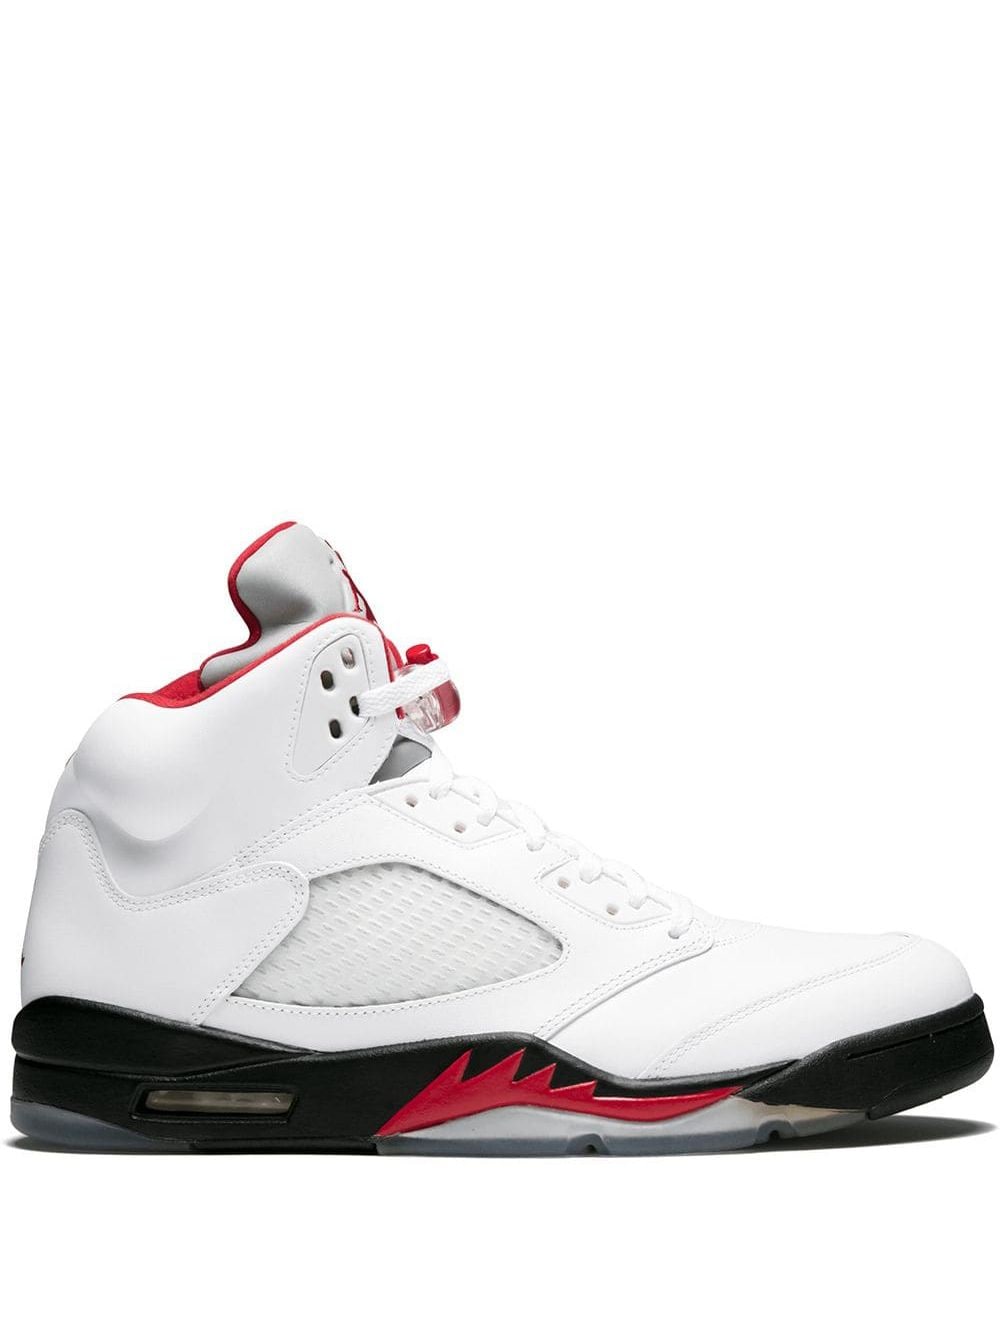 Jordan Air Jordan 5 Retro "Fire Red 2013" sneakers - White